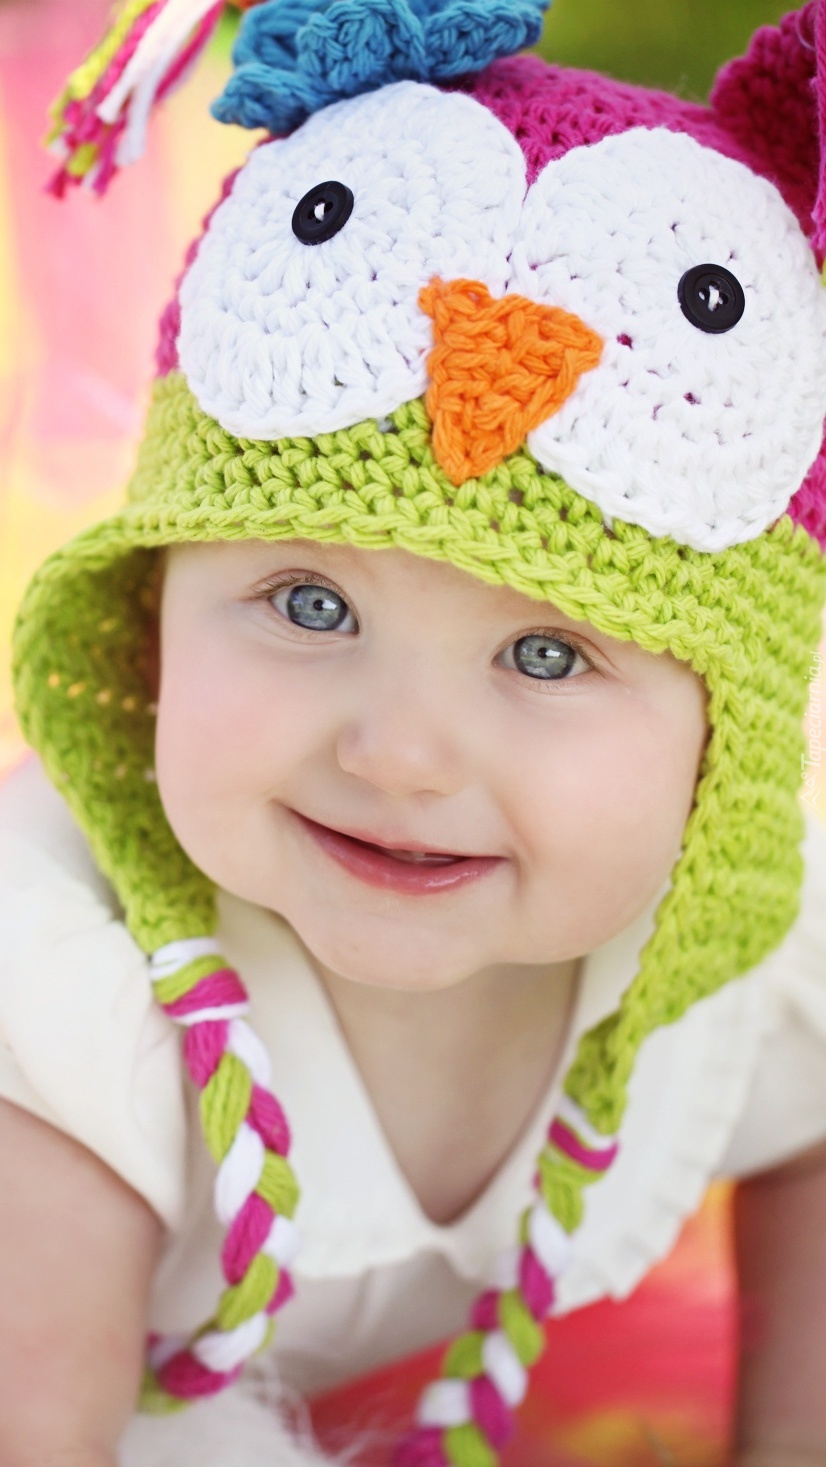 Dziecko w kolorowej czapeczce